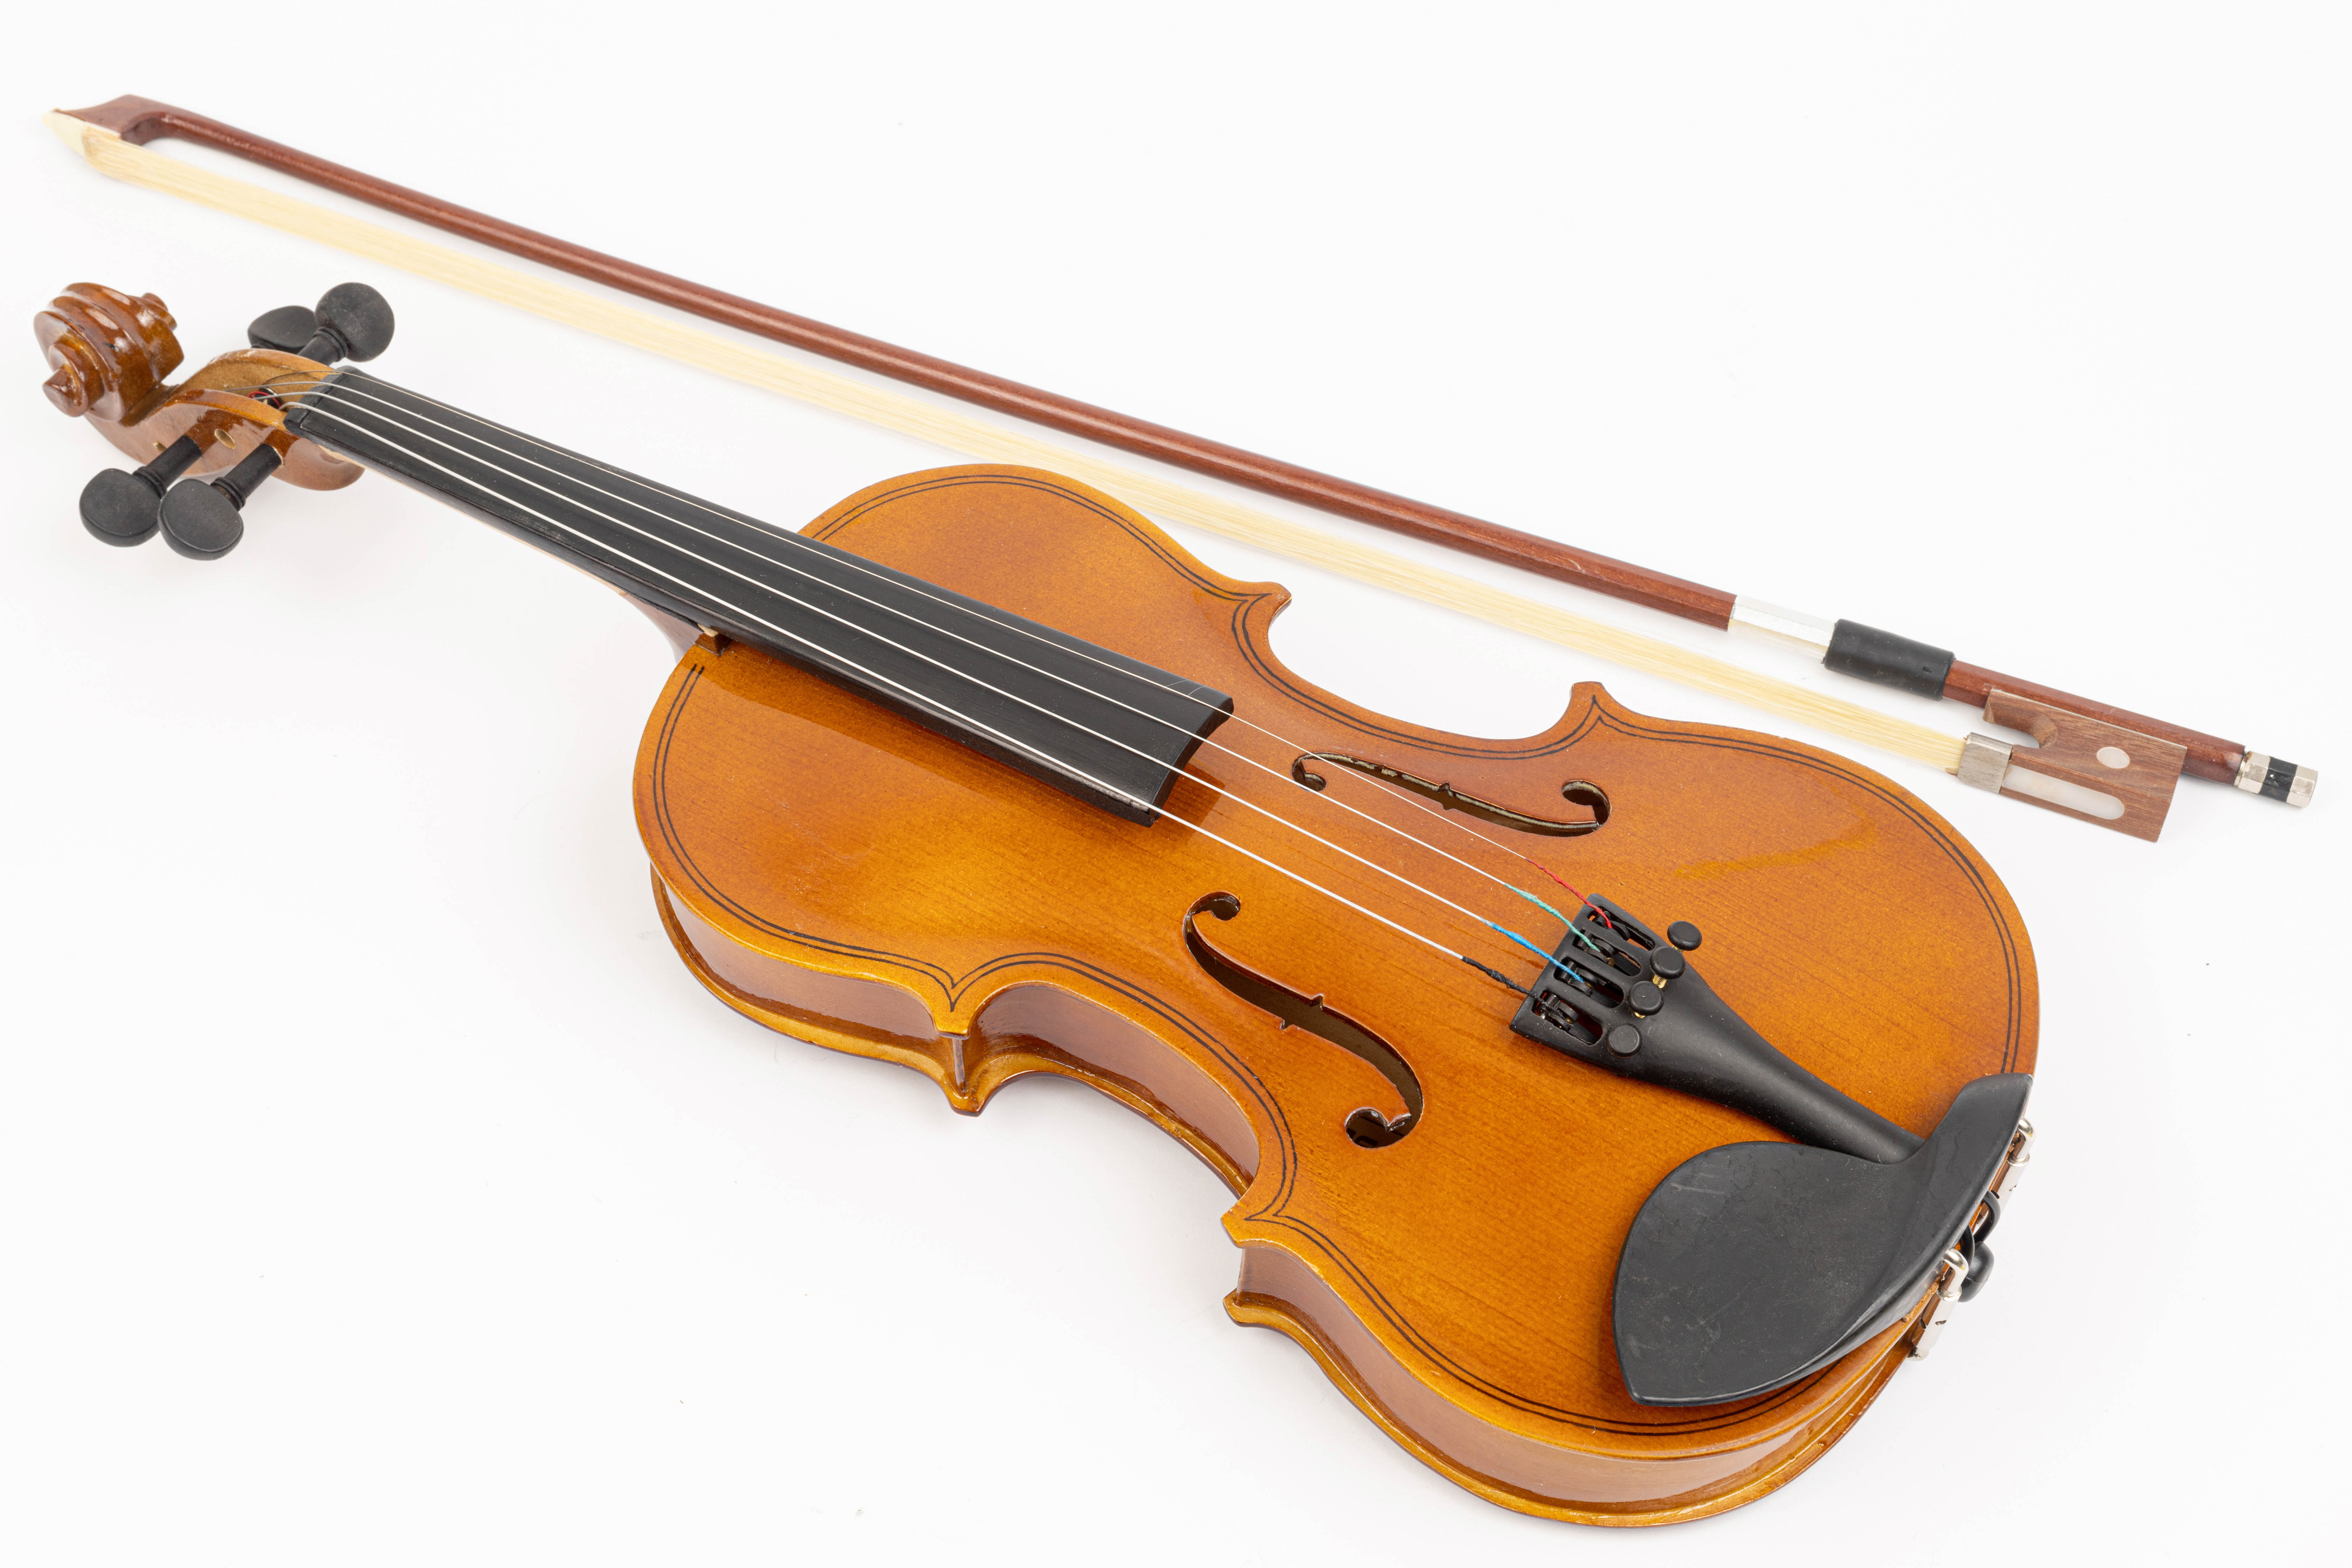 Изображение скрипки. Скрипка Viola. Фидл инструмент. Смычок струнные смычковые музыкальные инструменты. Виола струнные смычковые музыкальные инструменты.